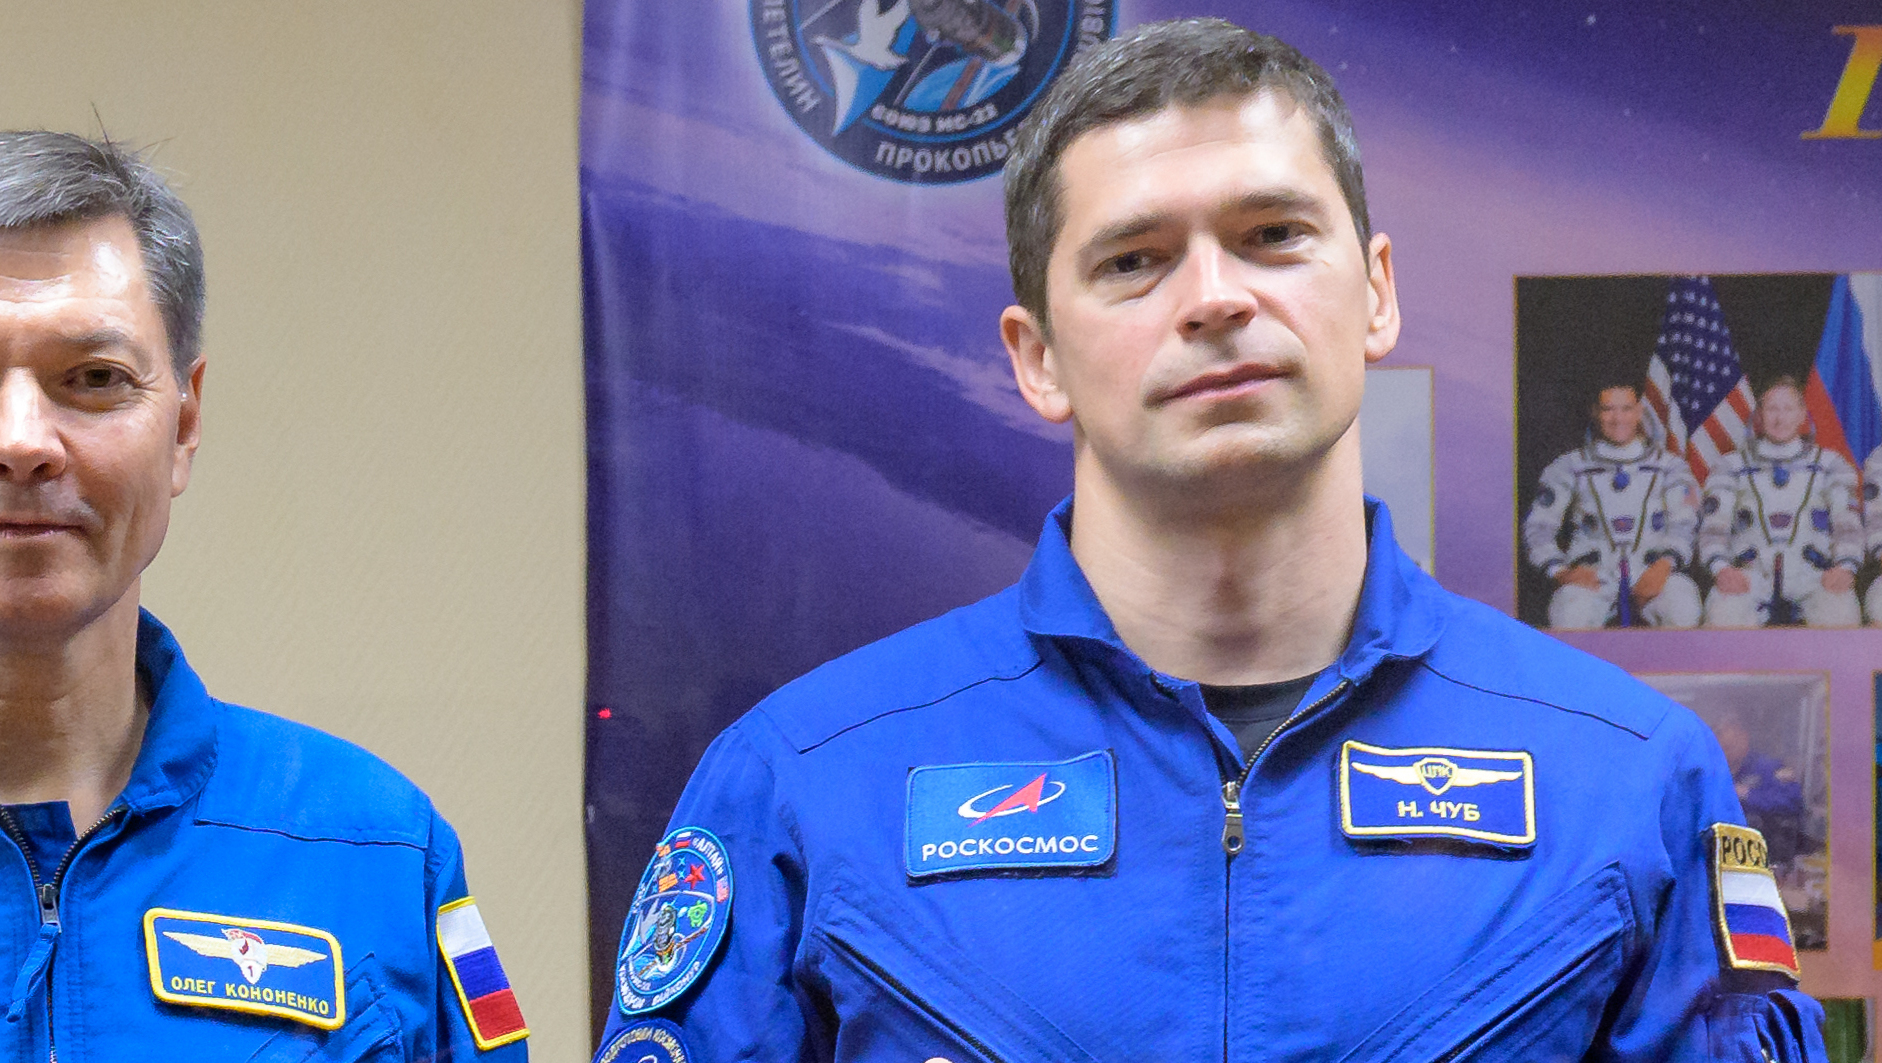 Космонавт из Новочеркасска Николай Чуб полетит на МКС